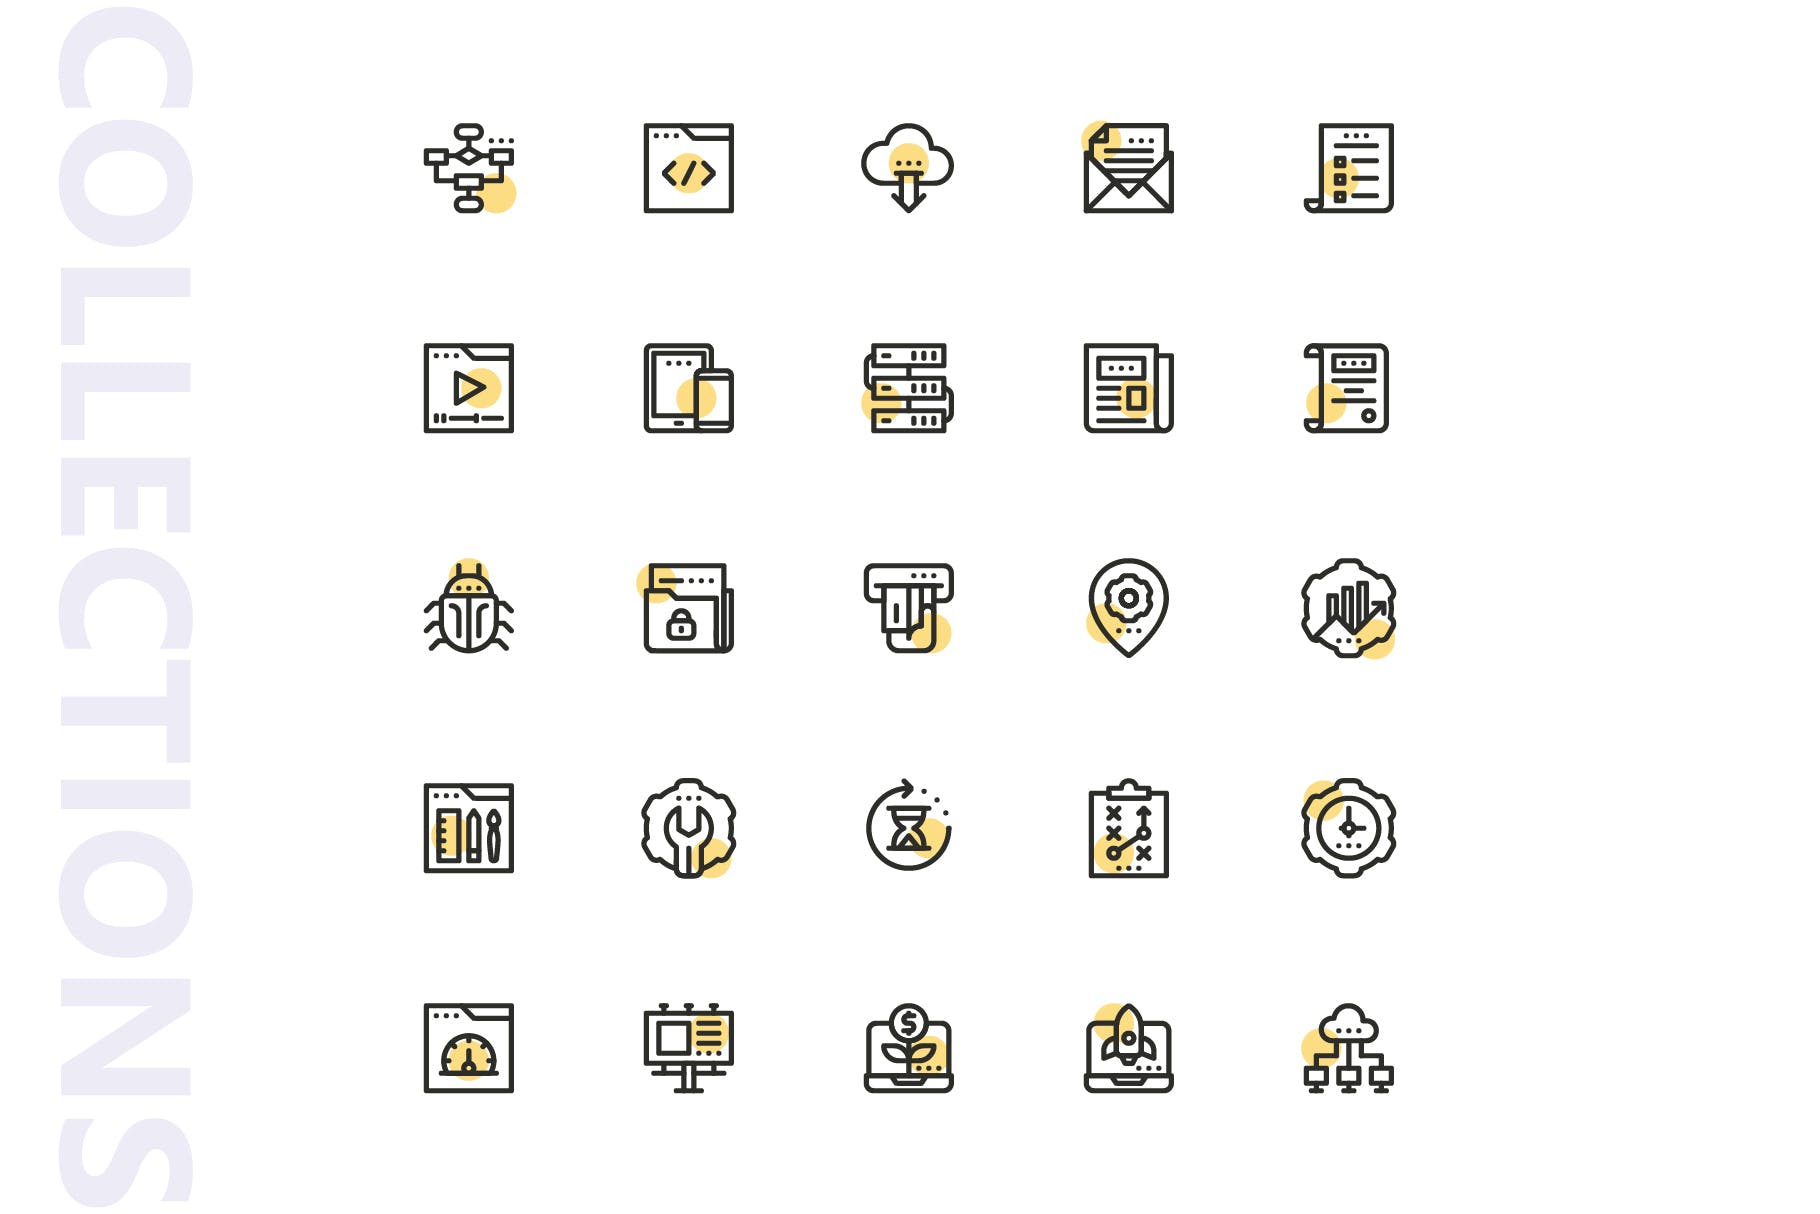 25枚SEO搜索引擎优化营销矢量圆点装饰素材库精选图标v1 SEO Marketing Shape Icons插图(3)